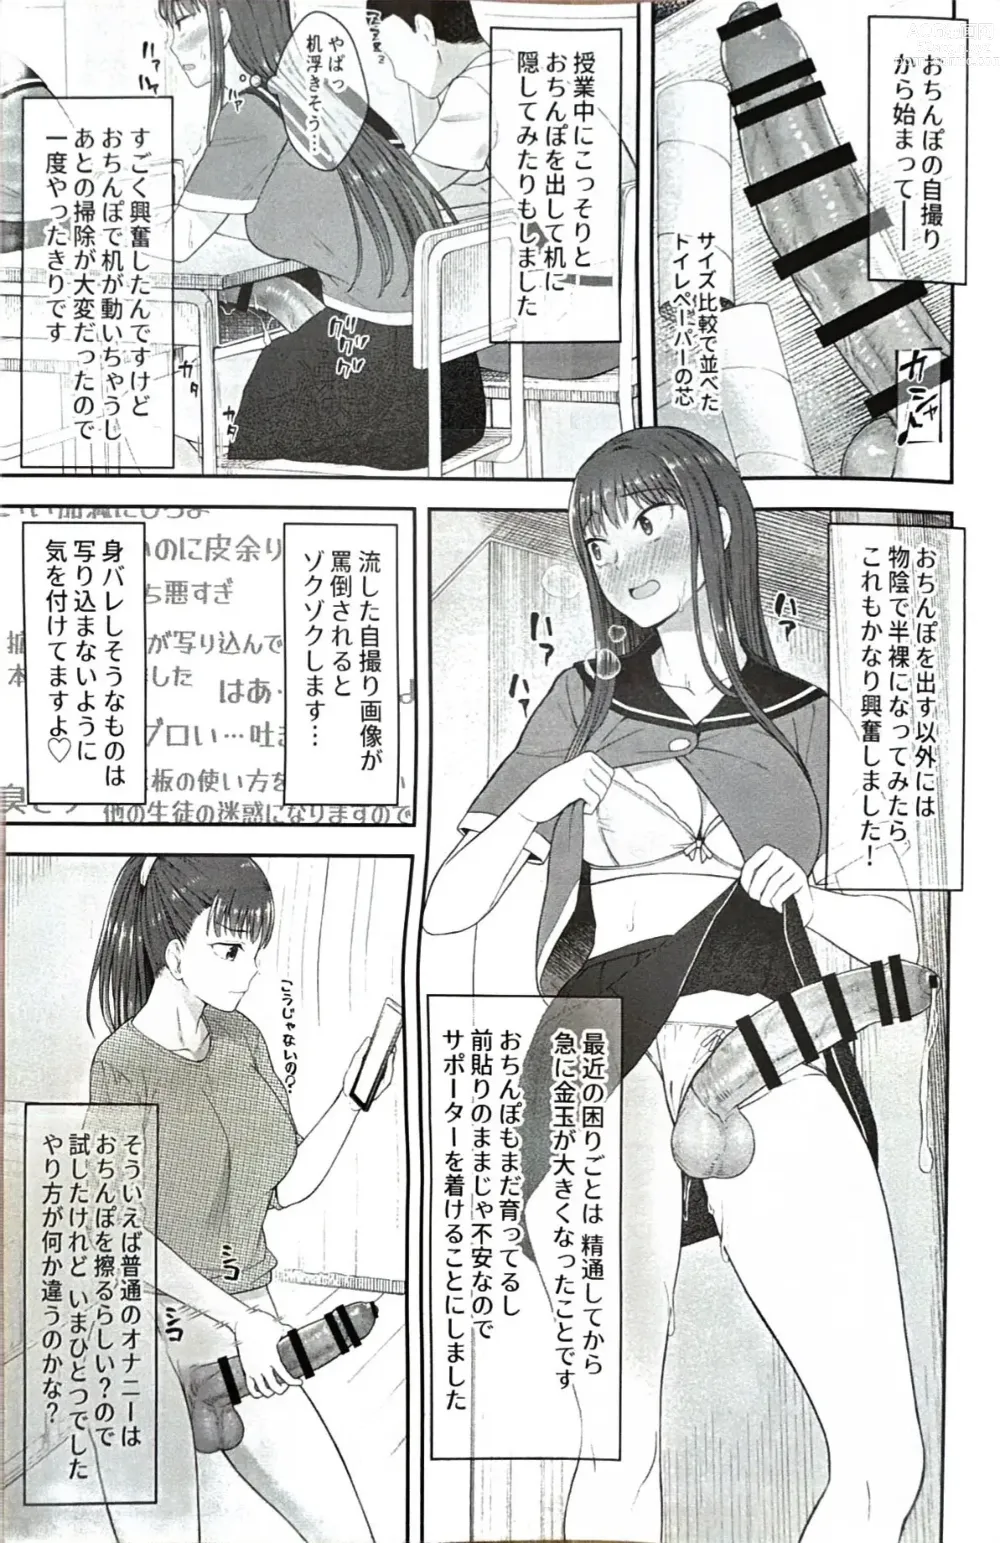 Page 4 of doujinshi Danseiki Roshutsu Jidori-han no Shoutai wa Kanojo dake ga Shitteiru.